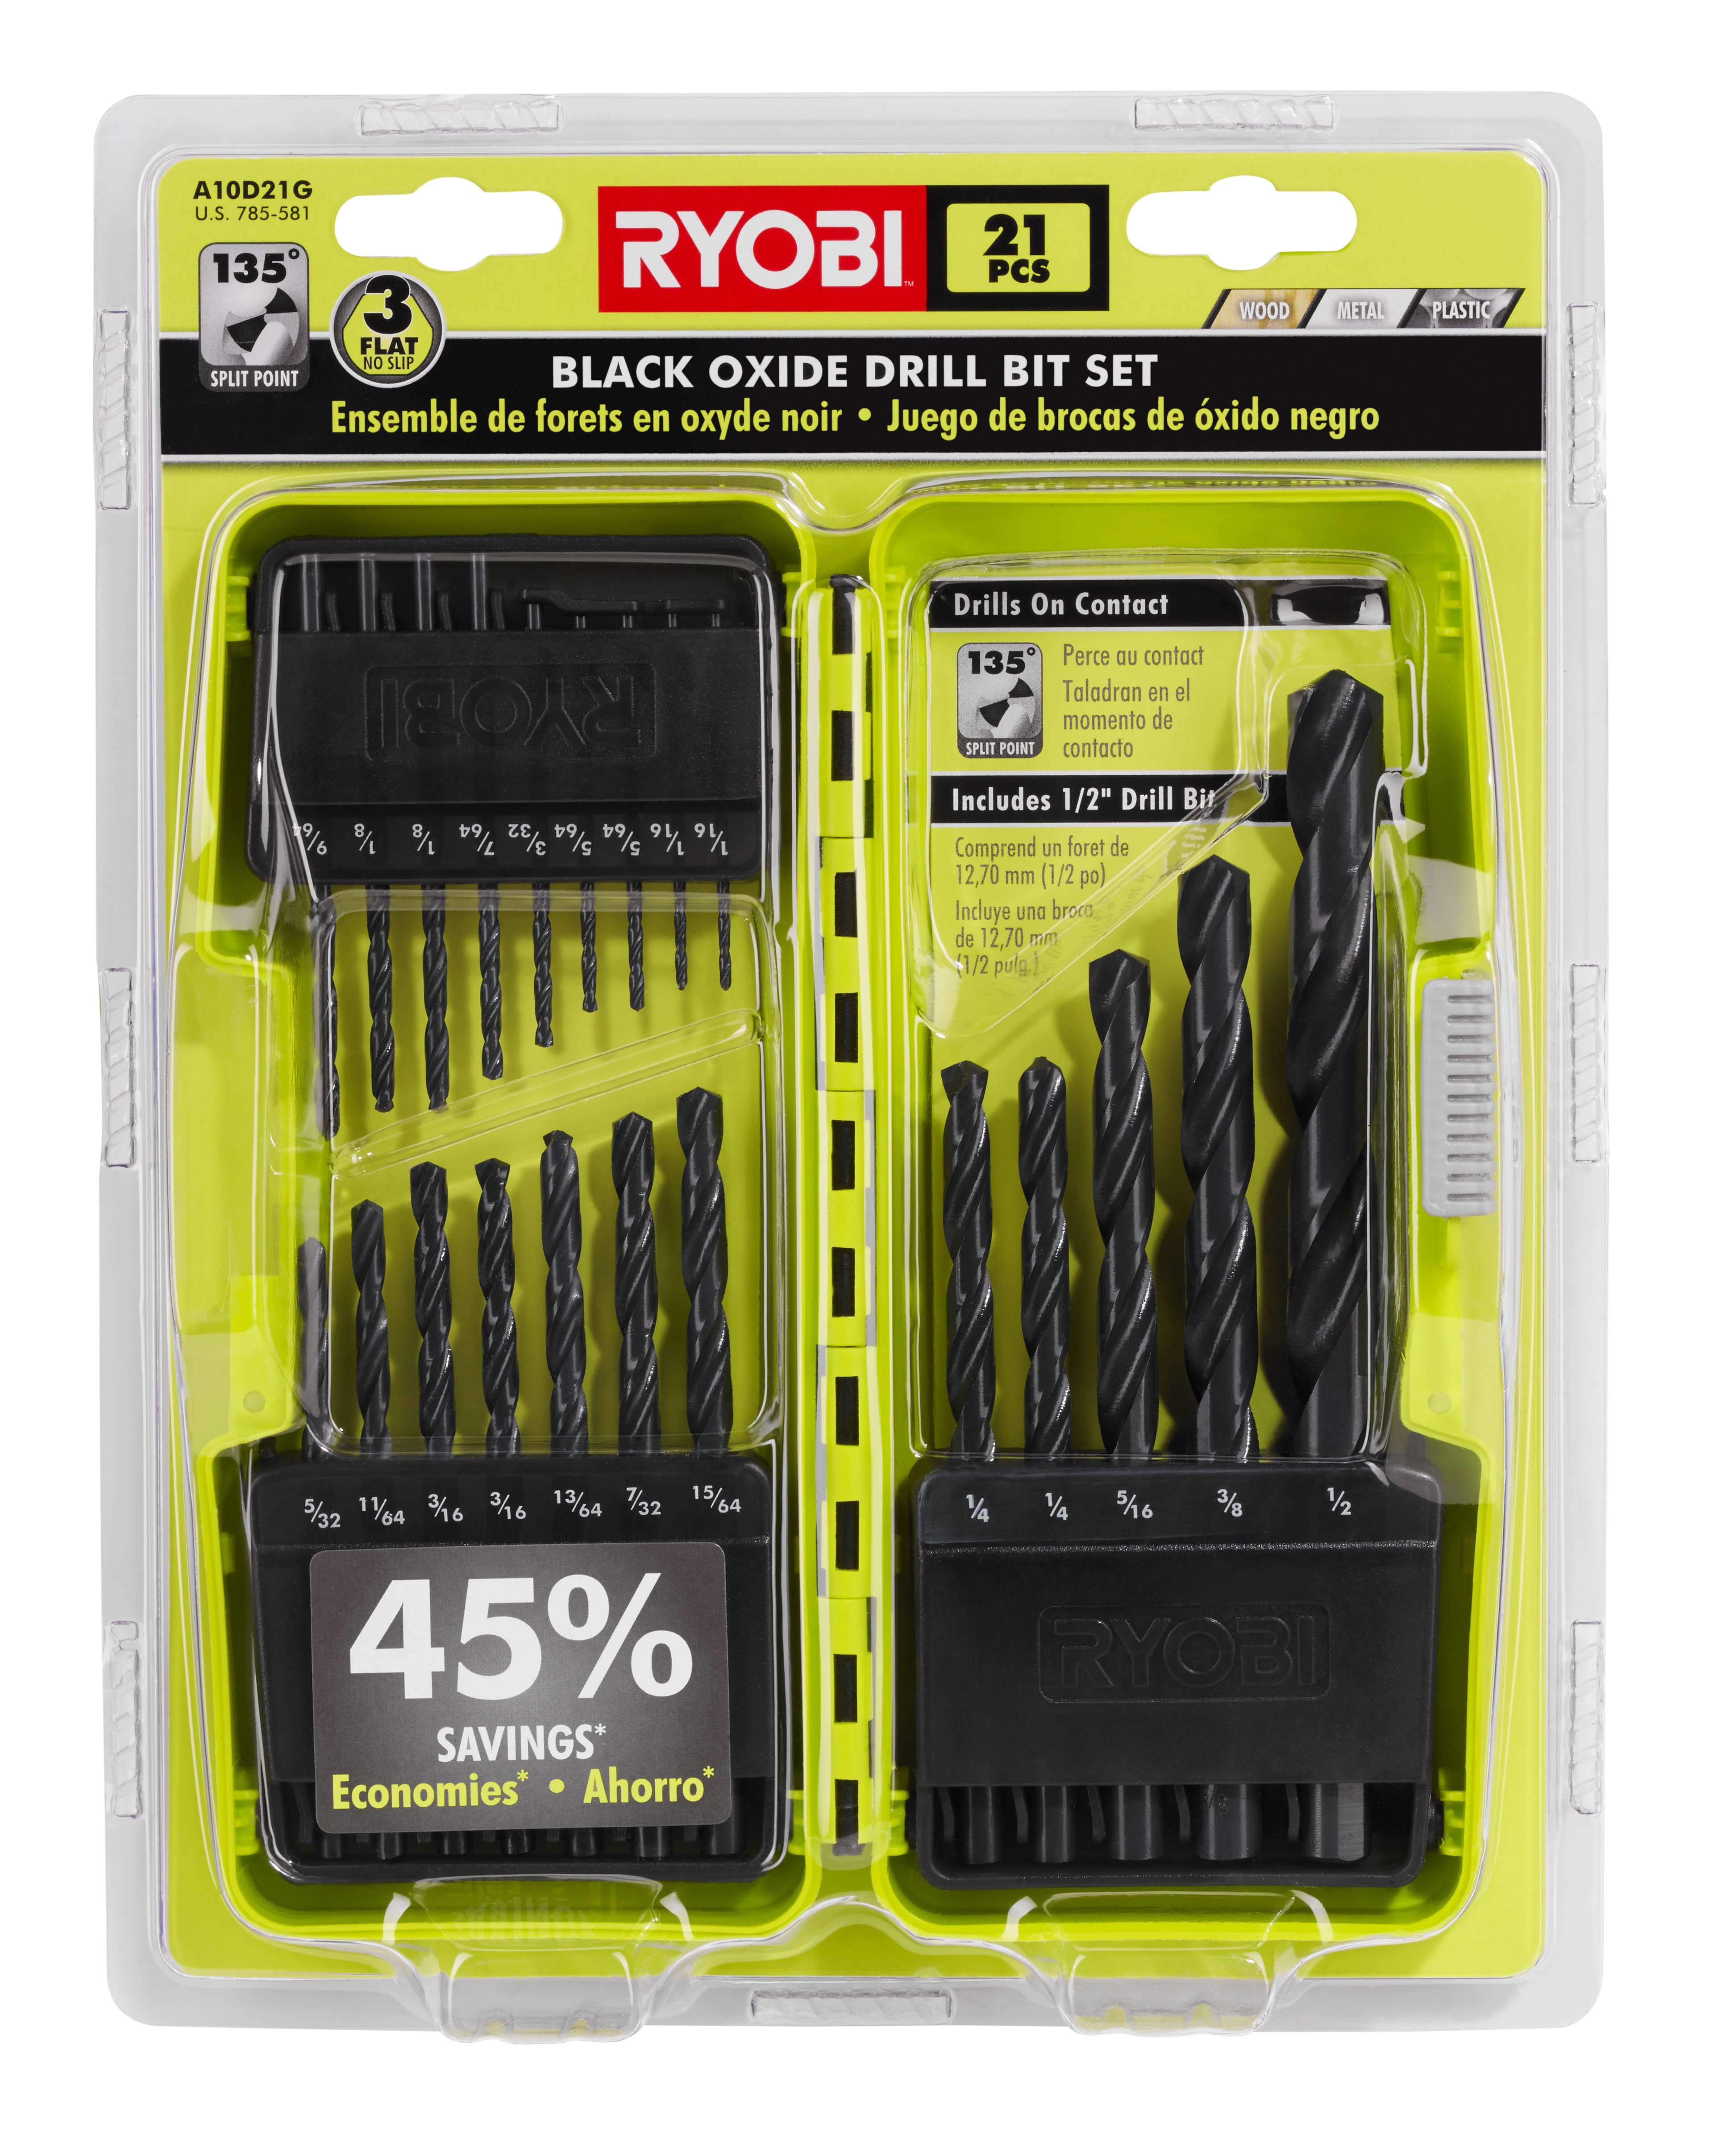 21 PC. Black Oxide Drill Bit Set - RYOBI Tools